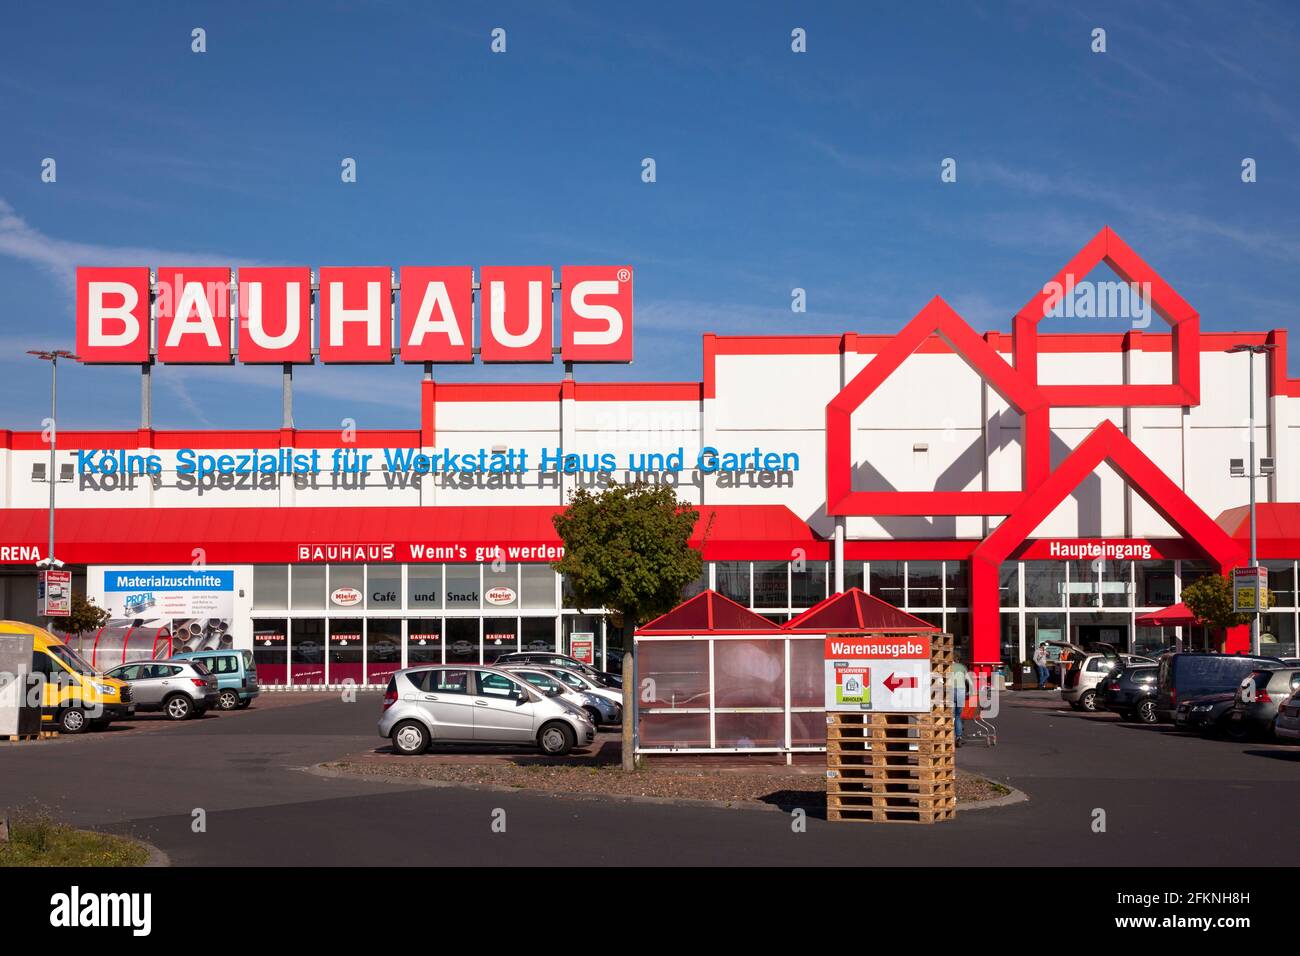 Il negozio fai da te / negozio di articoli per la casa Bauhaus nel distretto di Kalk, Colonia, Germania. Der Baumarkt Bauhaus im Stadtteil Kalk, Koeln, Deutschland. Foto Stock